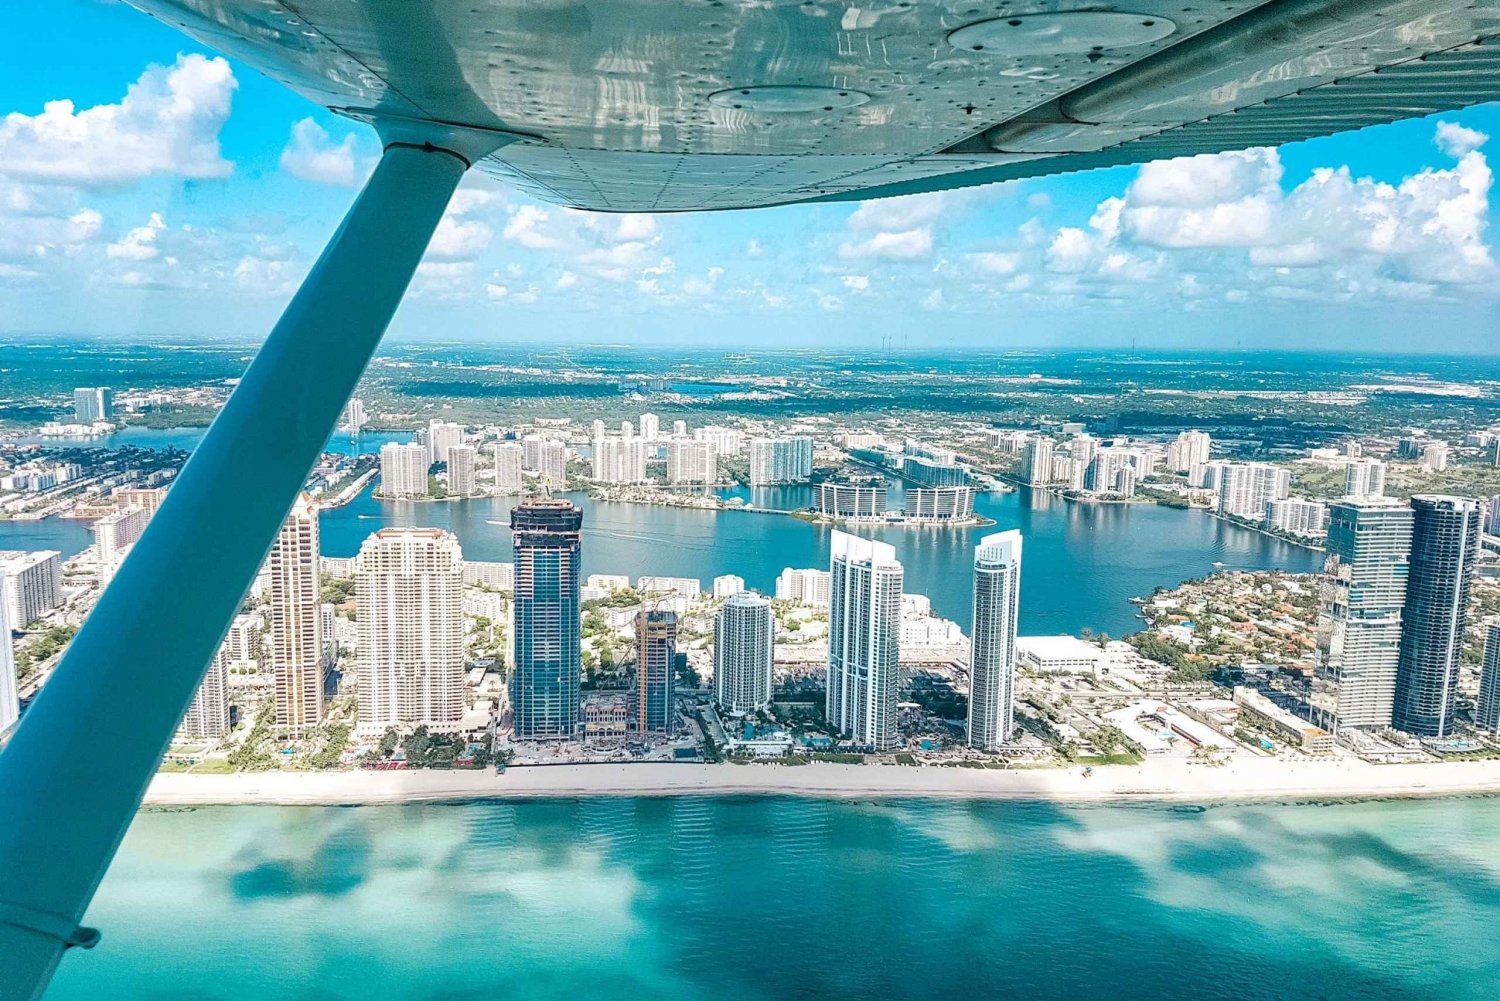 Miami Beach: Tour privado en avión por South Beach con bebidas